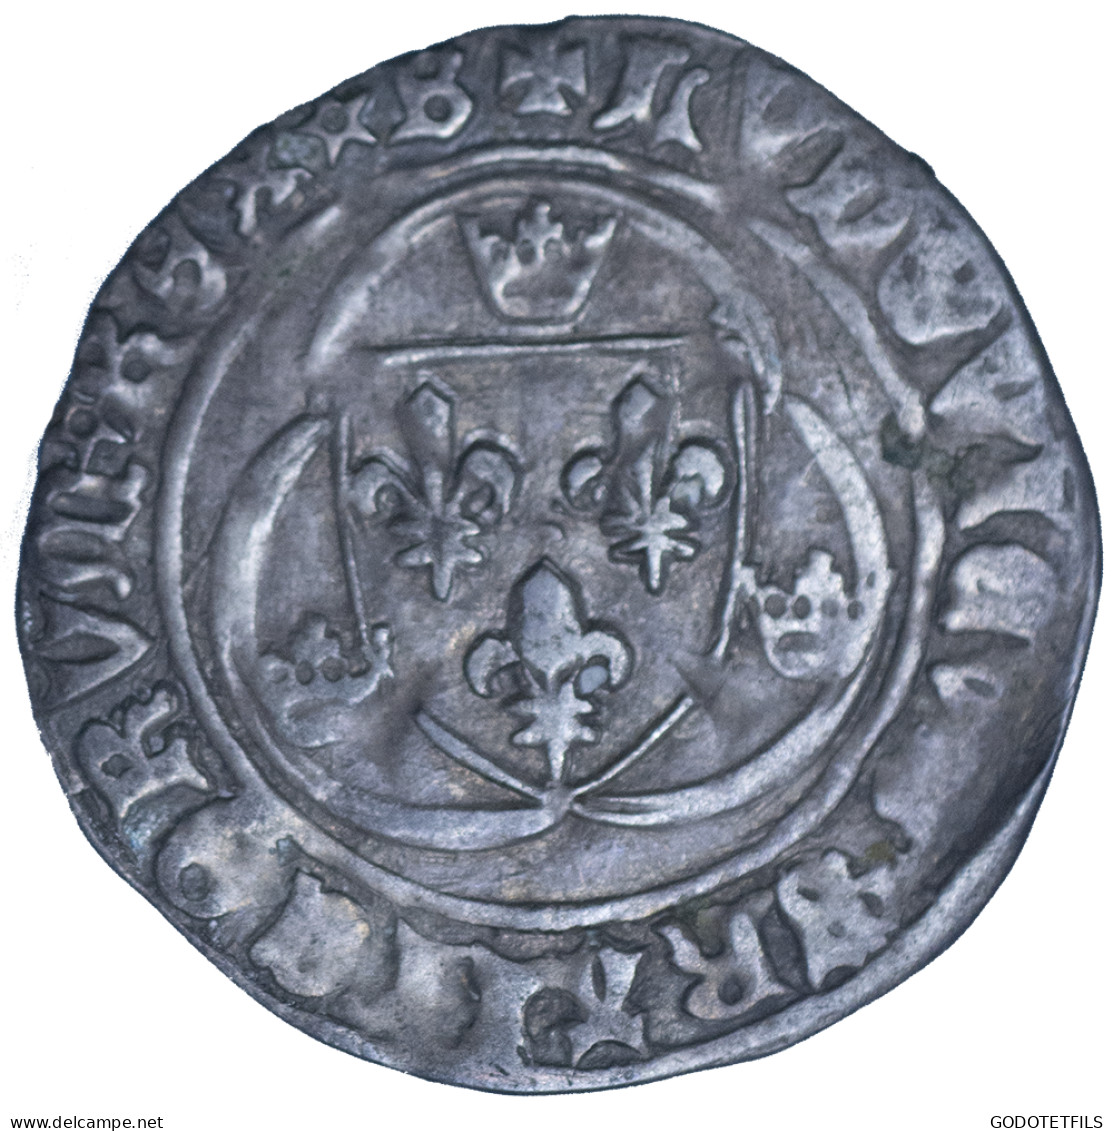 Louis XI-Blanc à La Couronne - 1461-1483 Louis XI Le Prudent